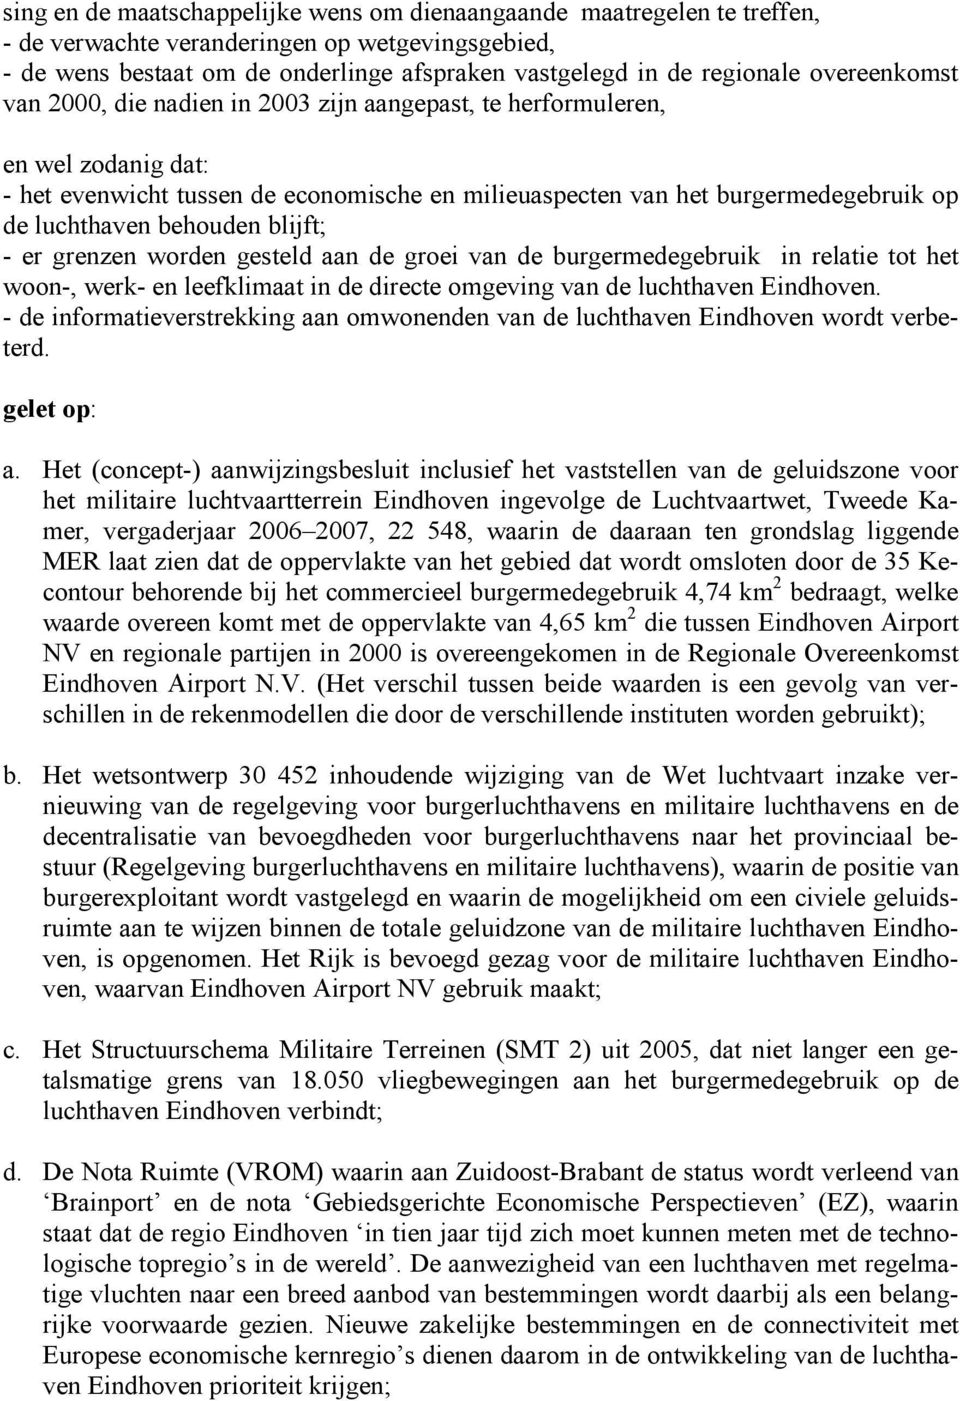 behouden blijft; - er grenzen worden gesteld aan de groei van de burgermedegebruik in relatie tot het woon-, werk- en leefklimaat in de directe omgeving van de luchthaven Eindhoven.